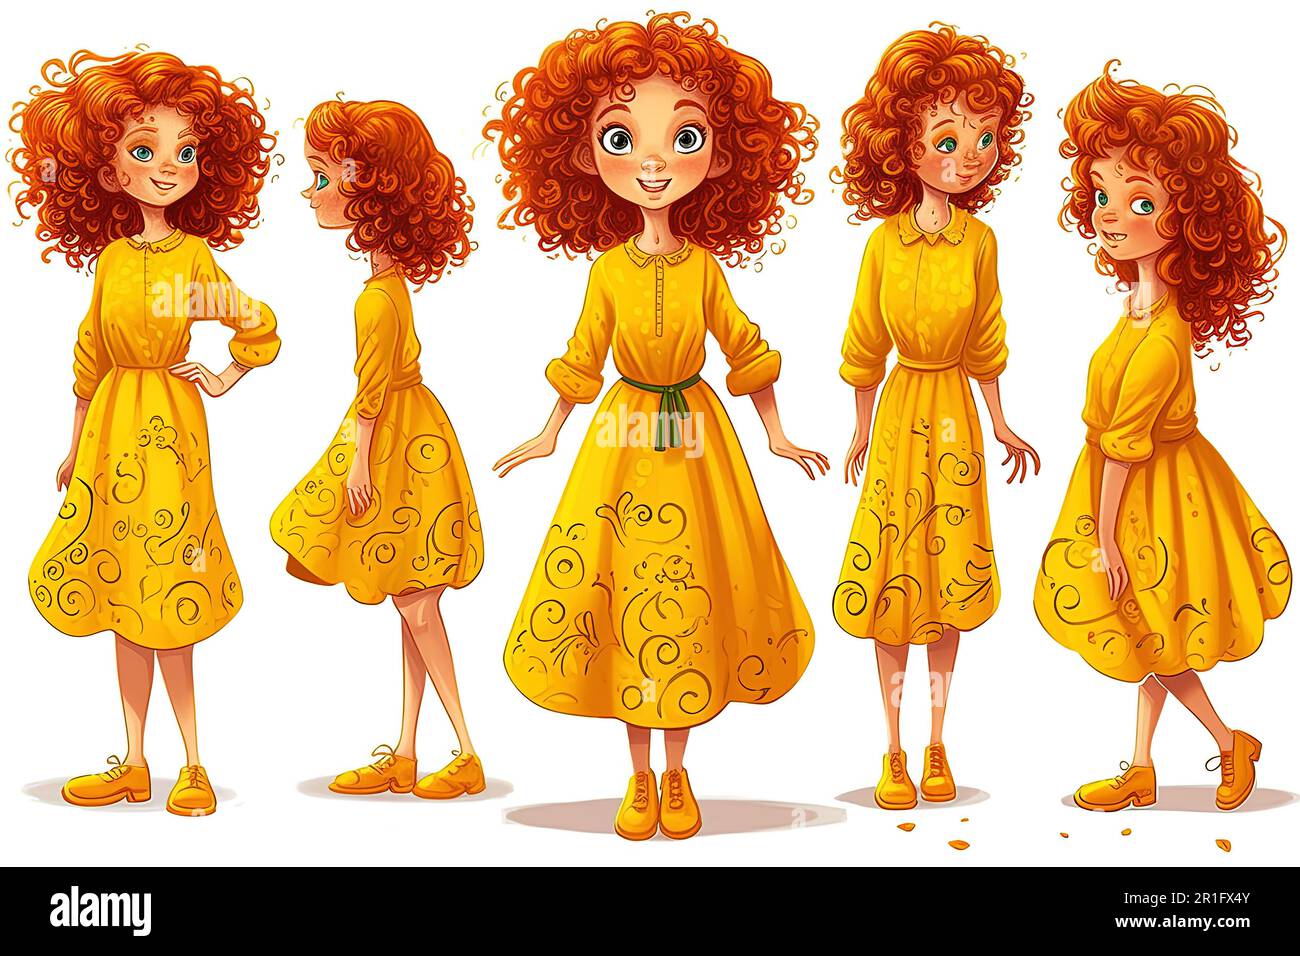 Una bambina , capelli ricci rossi, vestito giallo, pose diverse, immagine del corpo pieno, stile del libro dei bambini, illustrazione. Grafica vettoriale Foto Stock